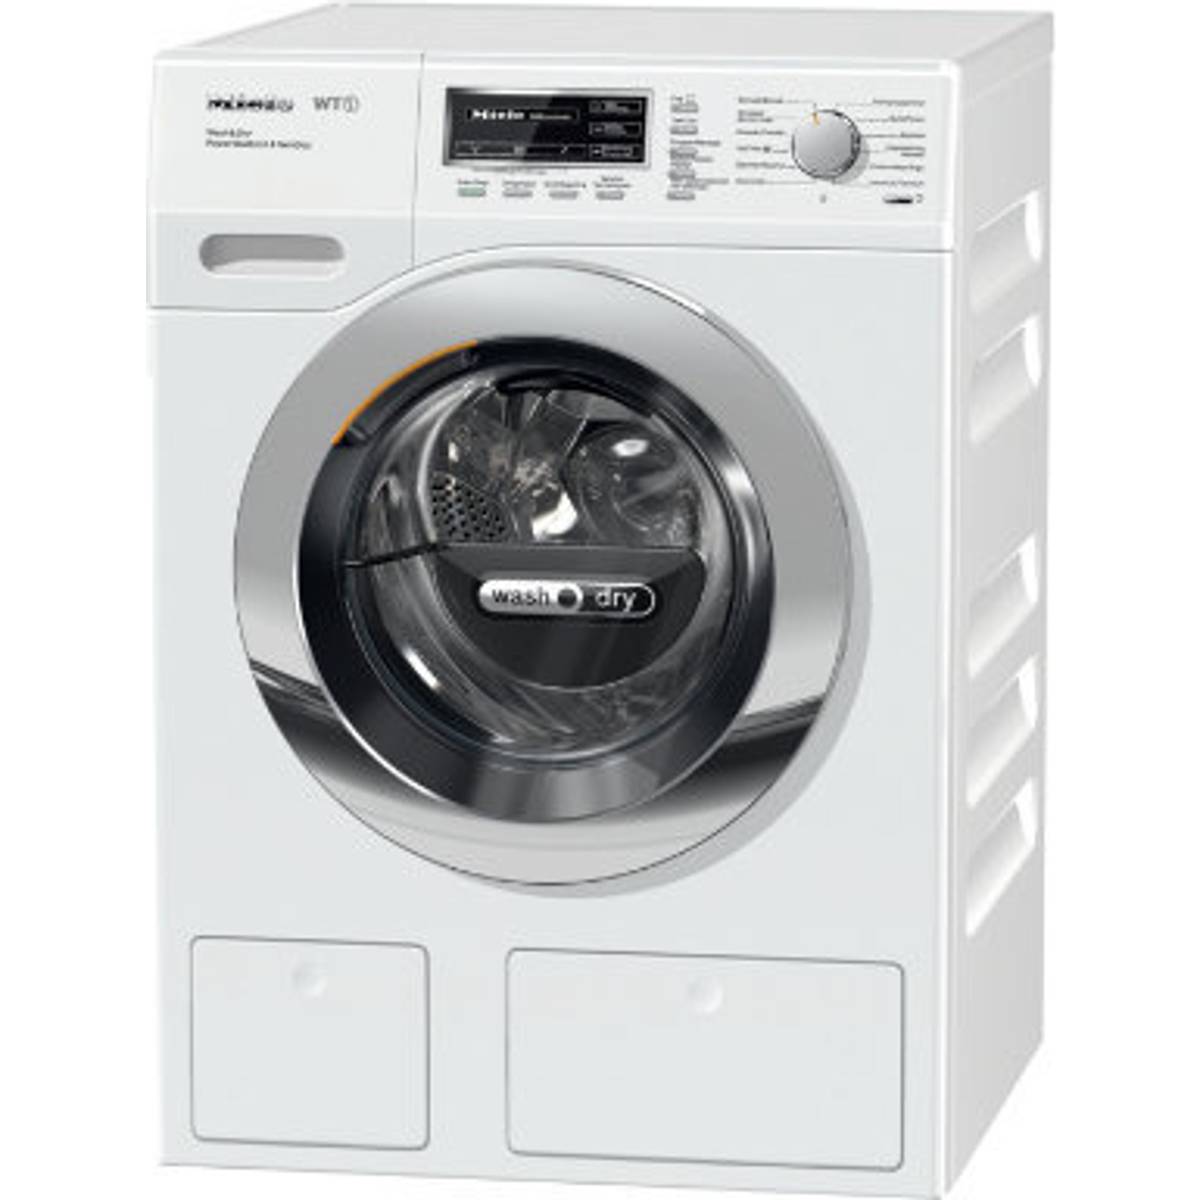 Tvätt torktumlare Tvättmaskiner - Jämför priser på PriceRunner